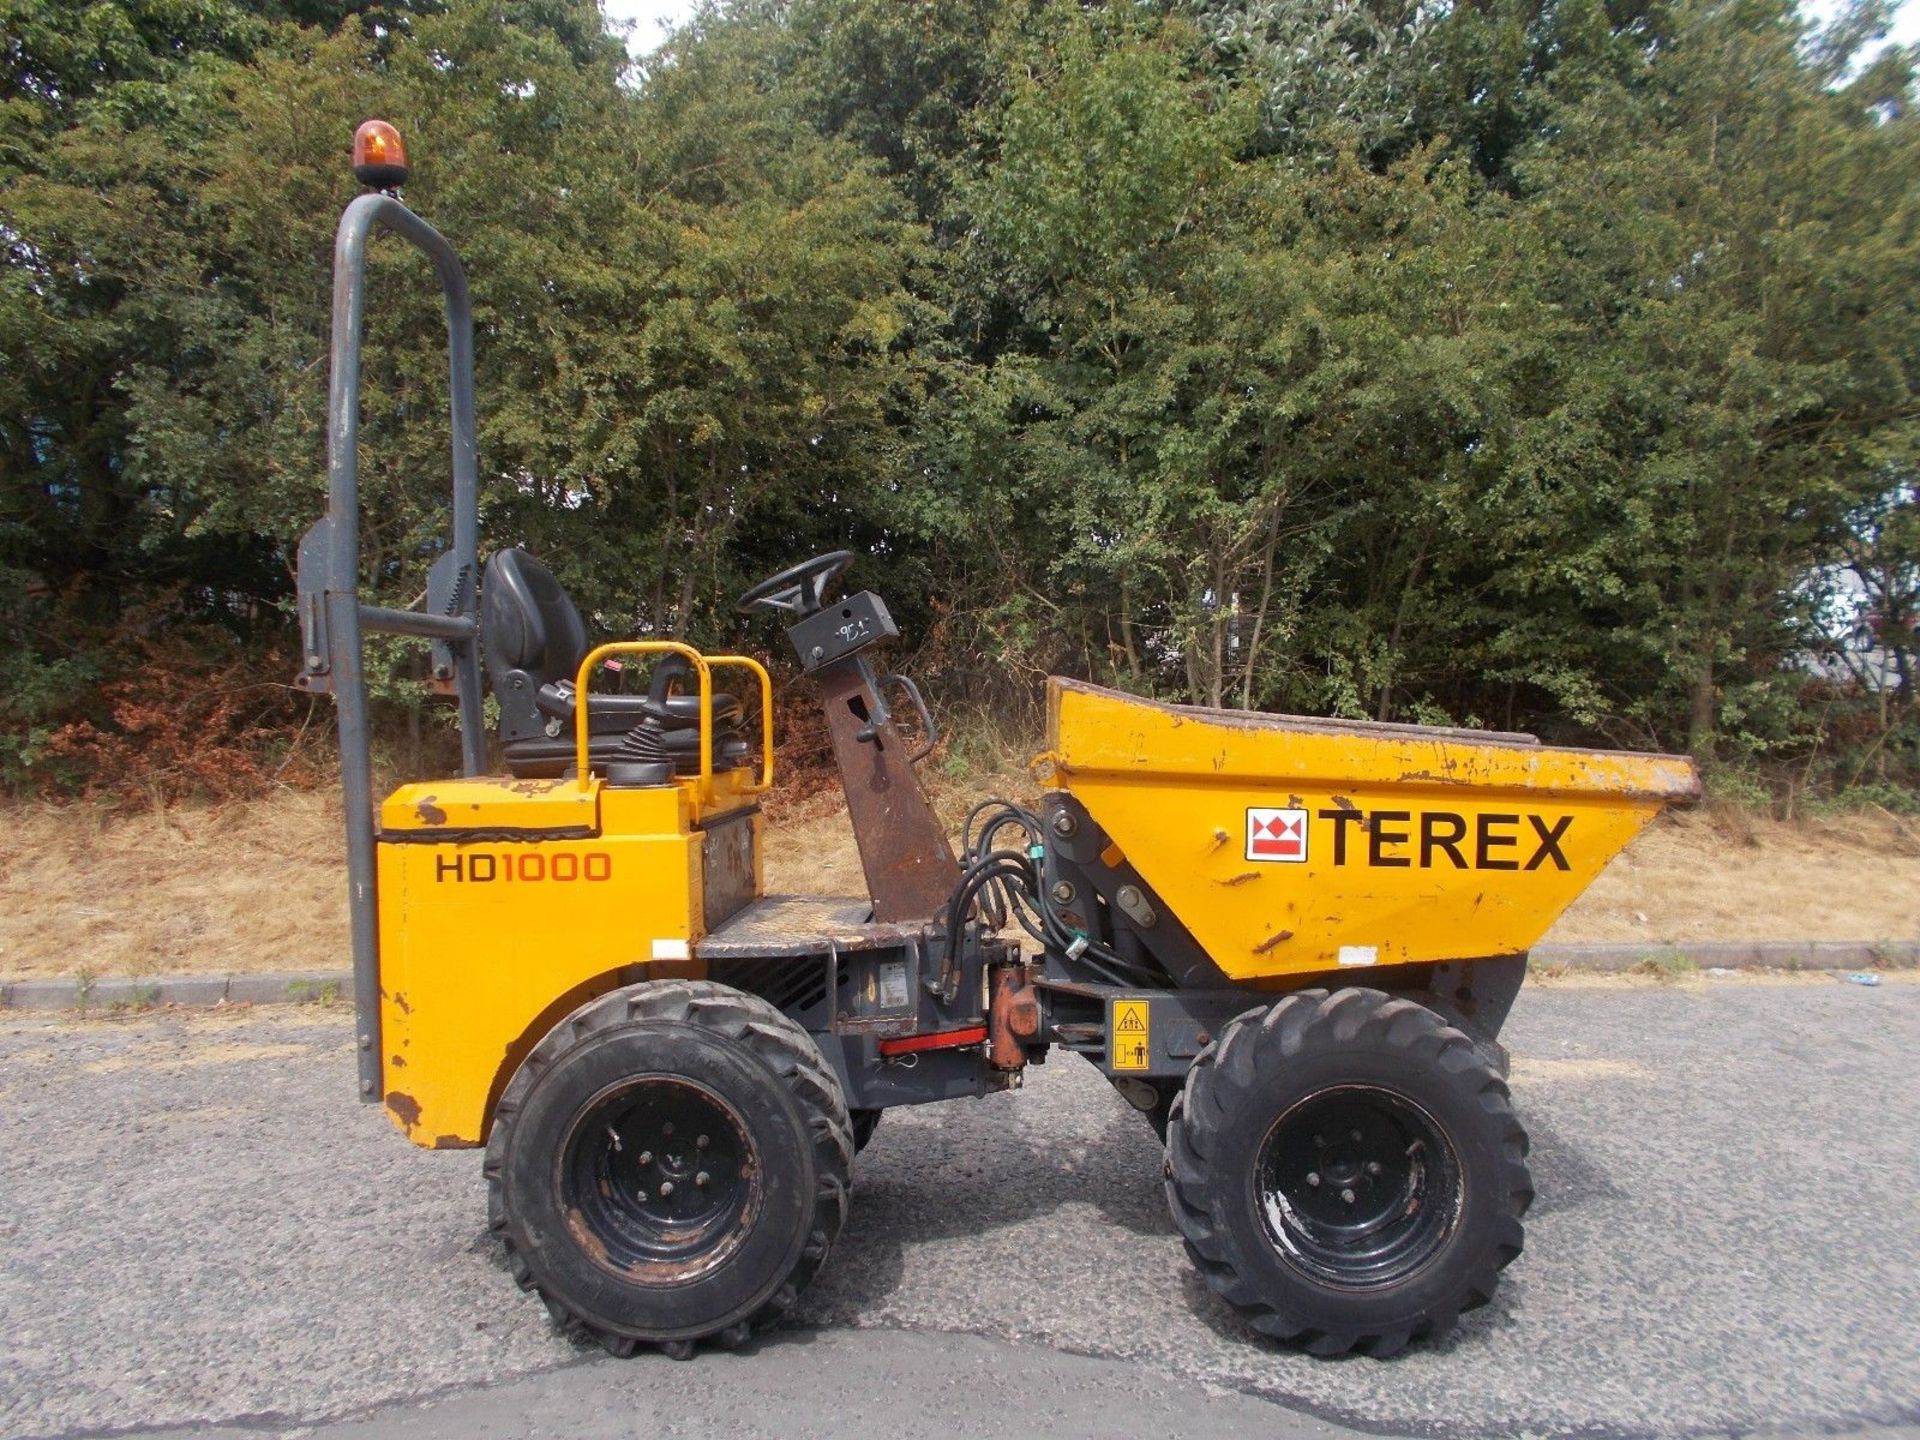 Terex HD1000 1 Ton Dumper